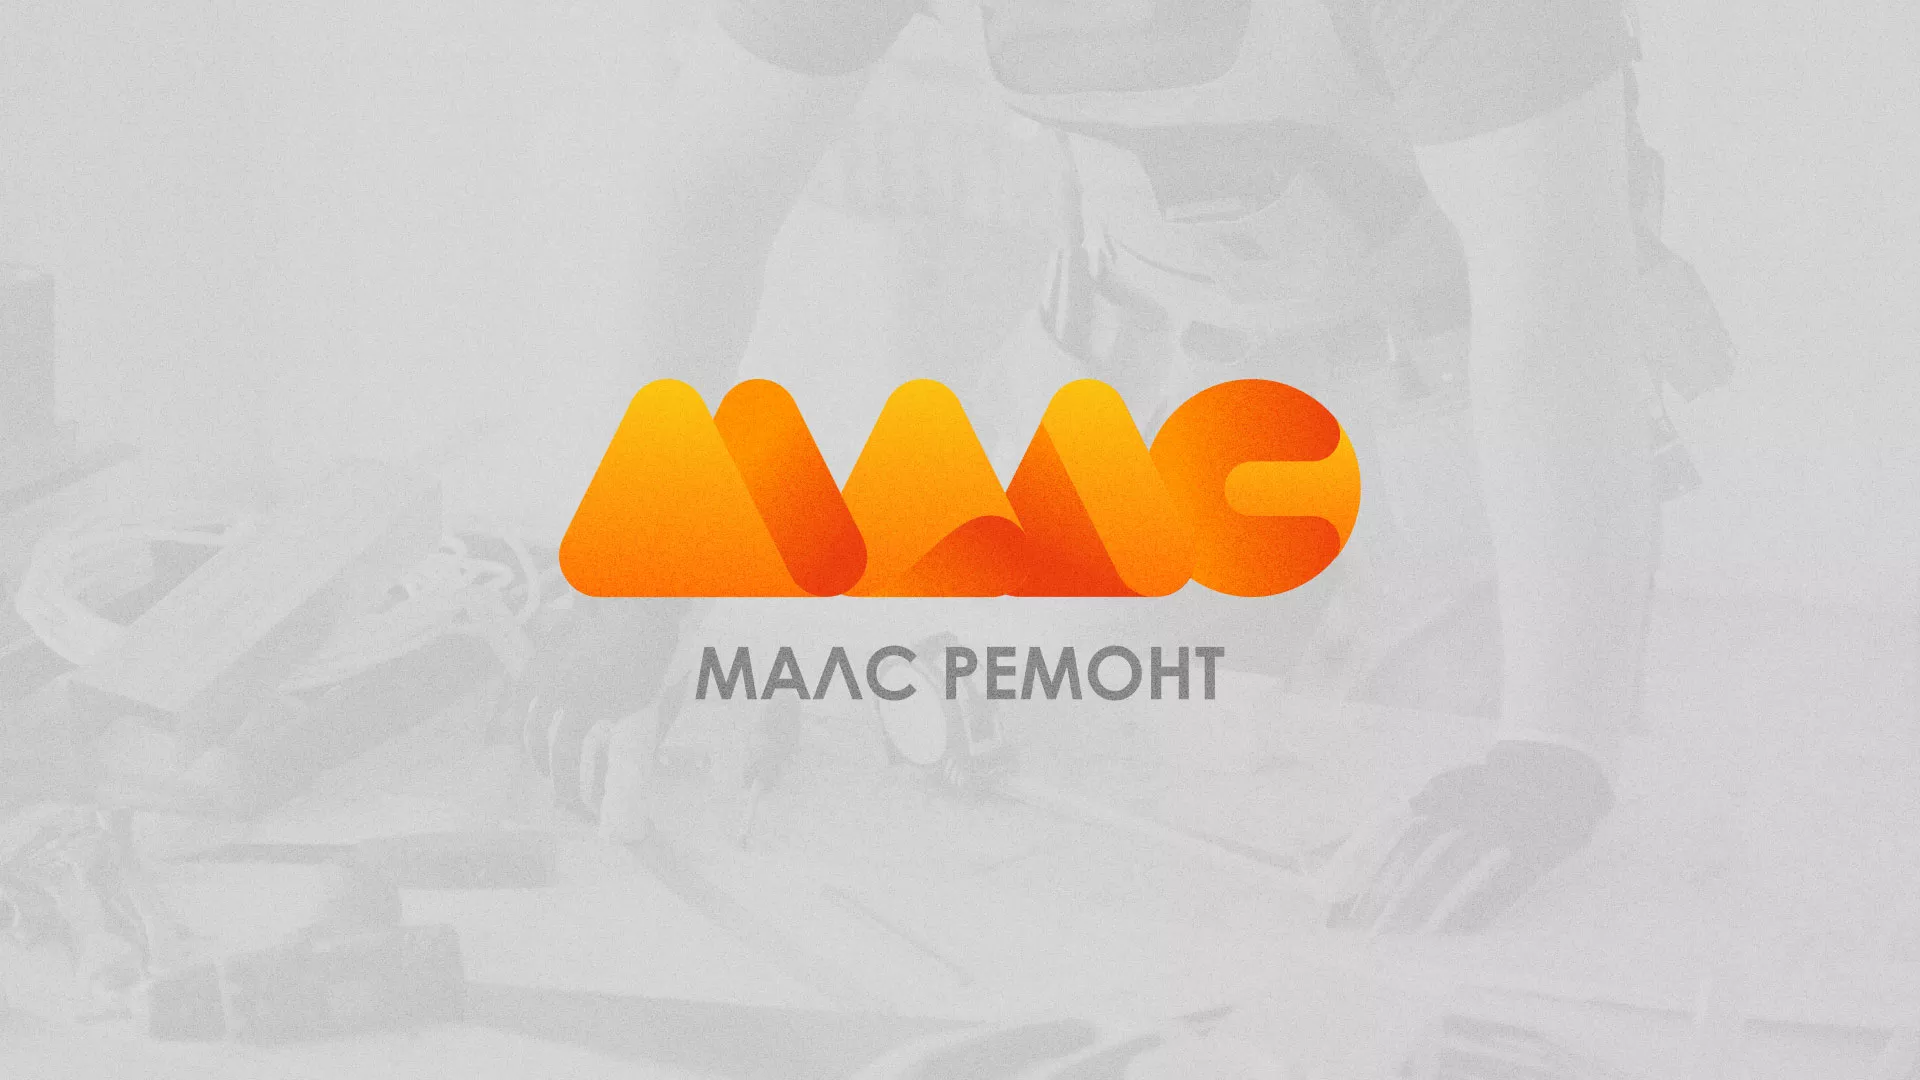 Создание логотипа для компании «МАЛС РЕМОНТ» в Соколе